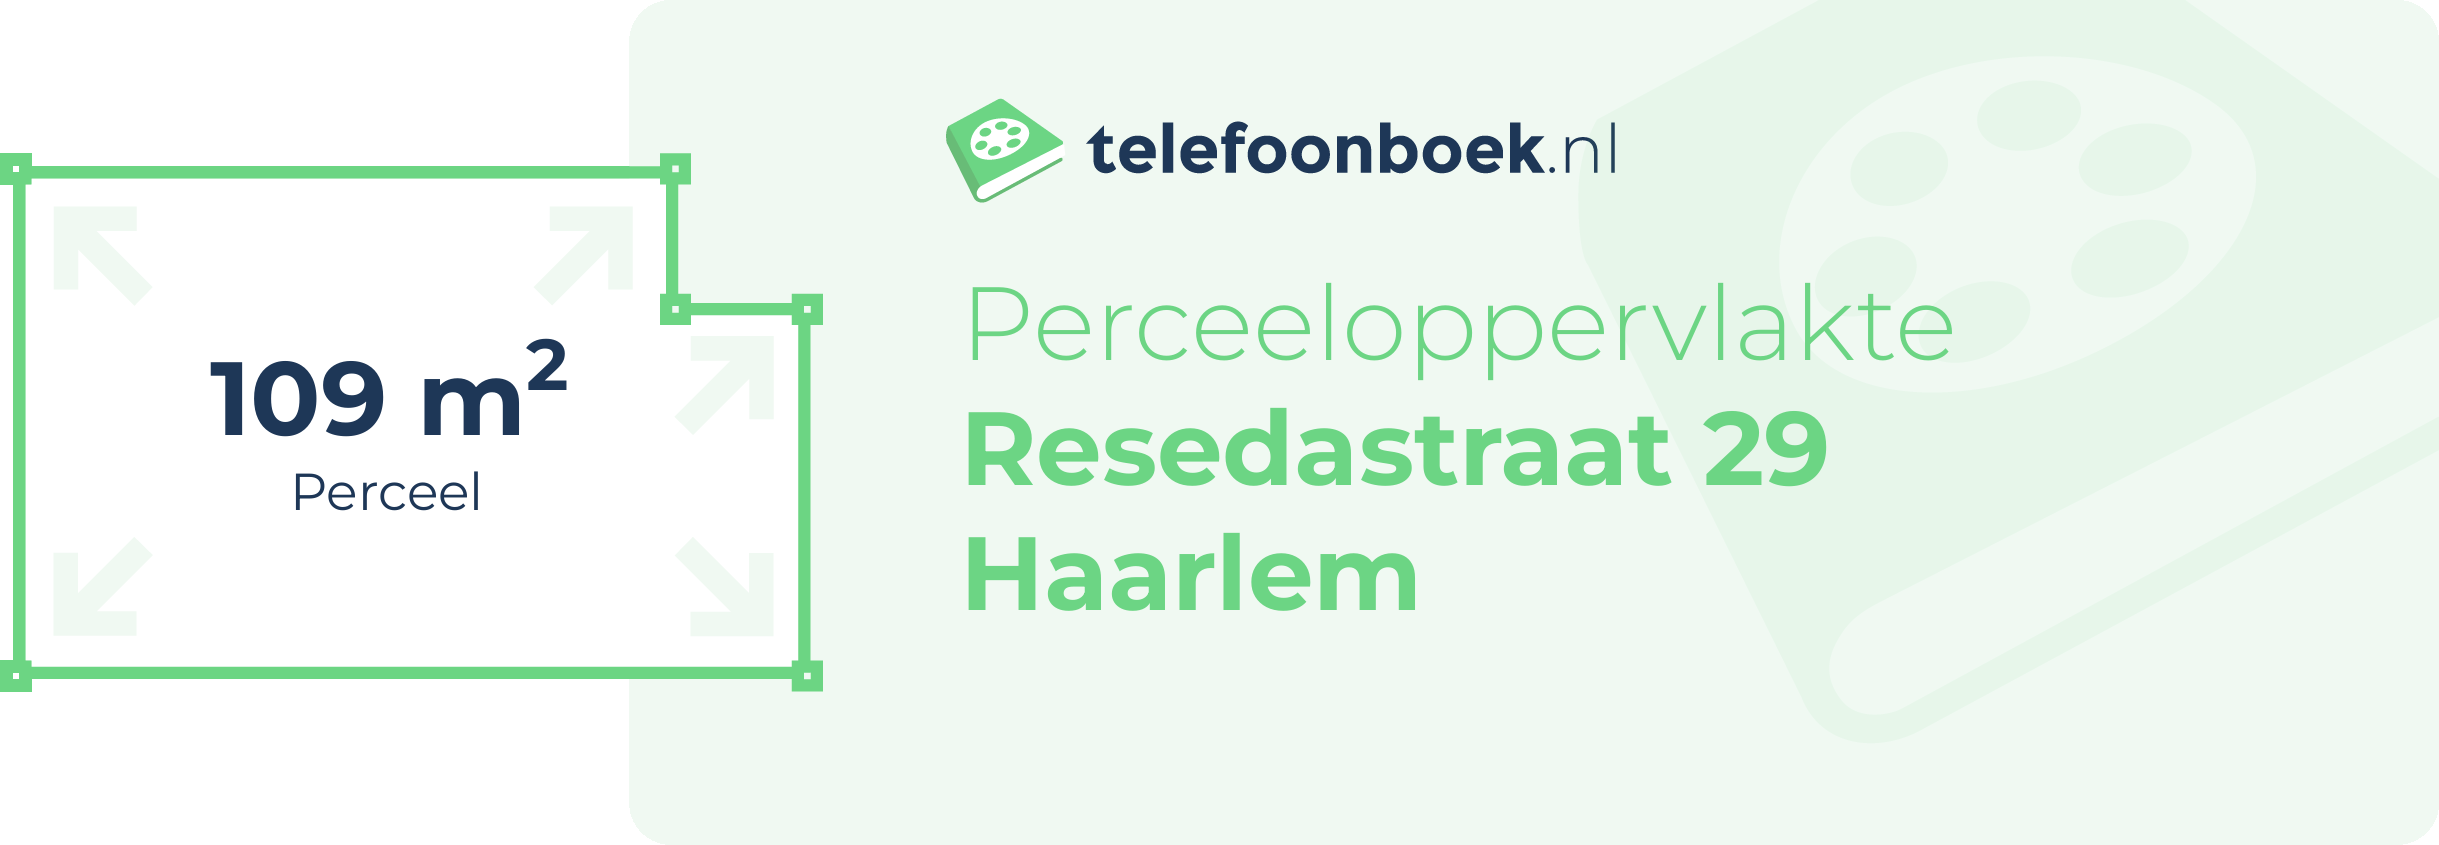 Perceeloppervlakte Resedastraat 29 Haarlem